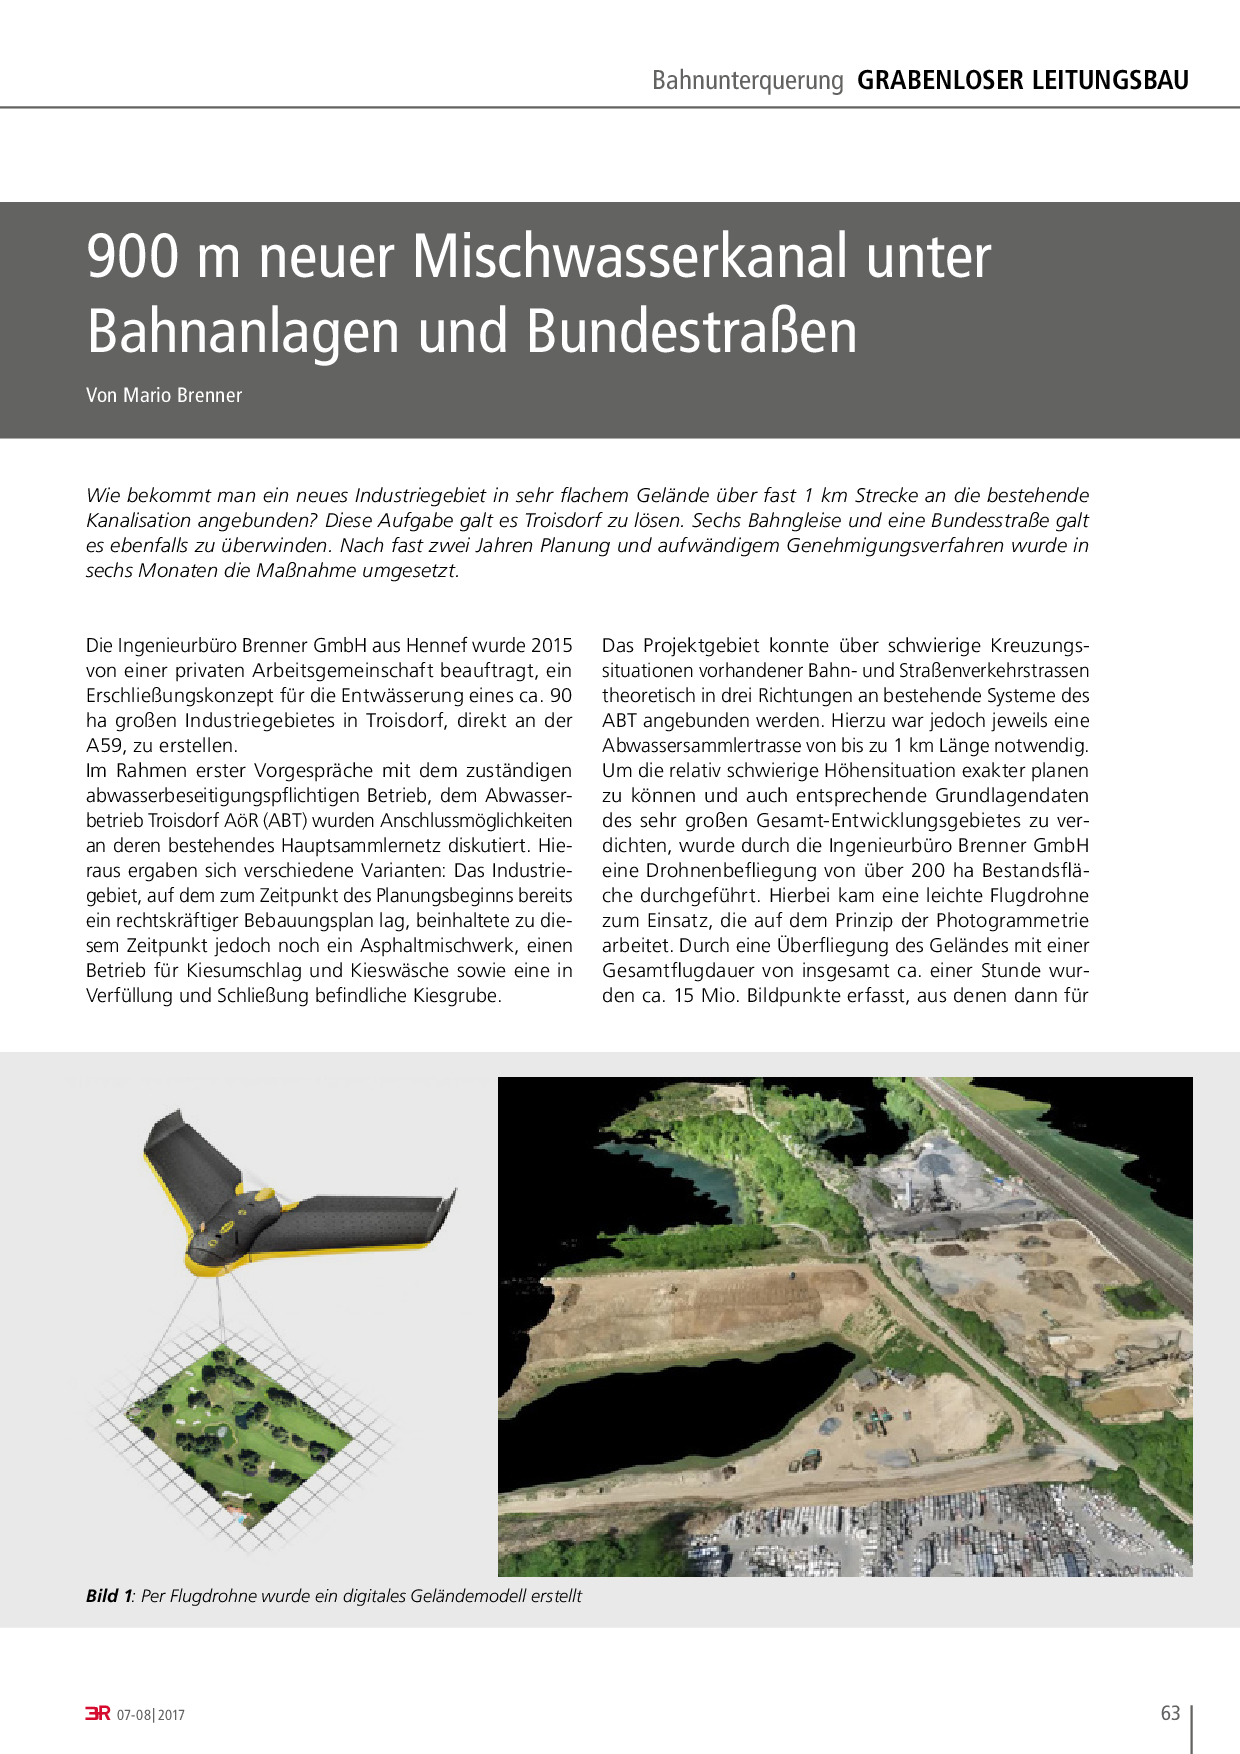 900 m neuer Mischwasserkanal unter Bahnanlagen und Bundestraßen